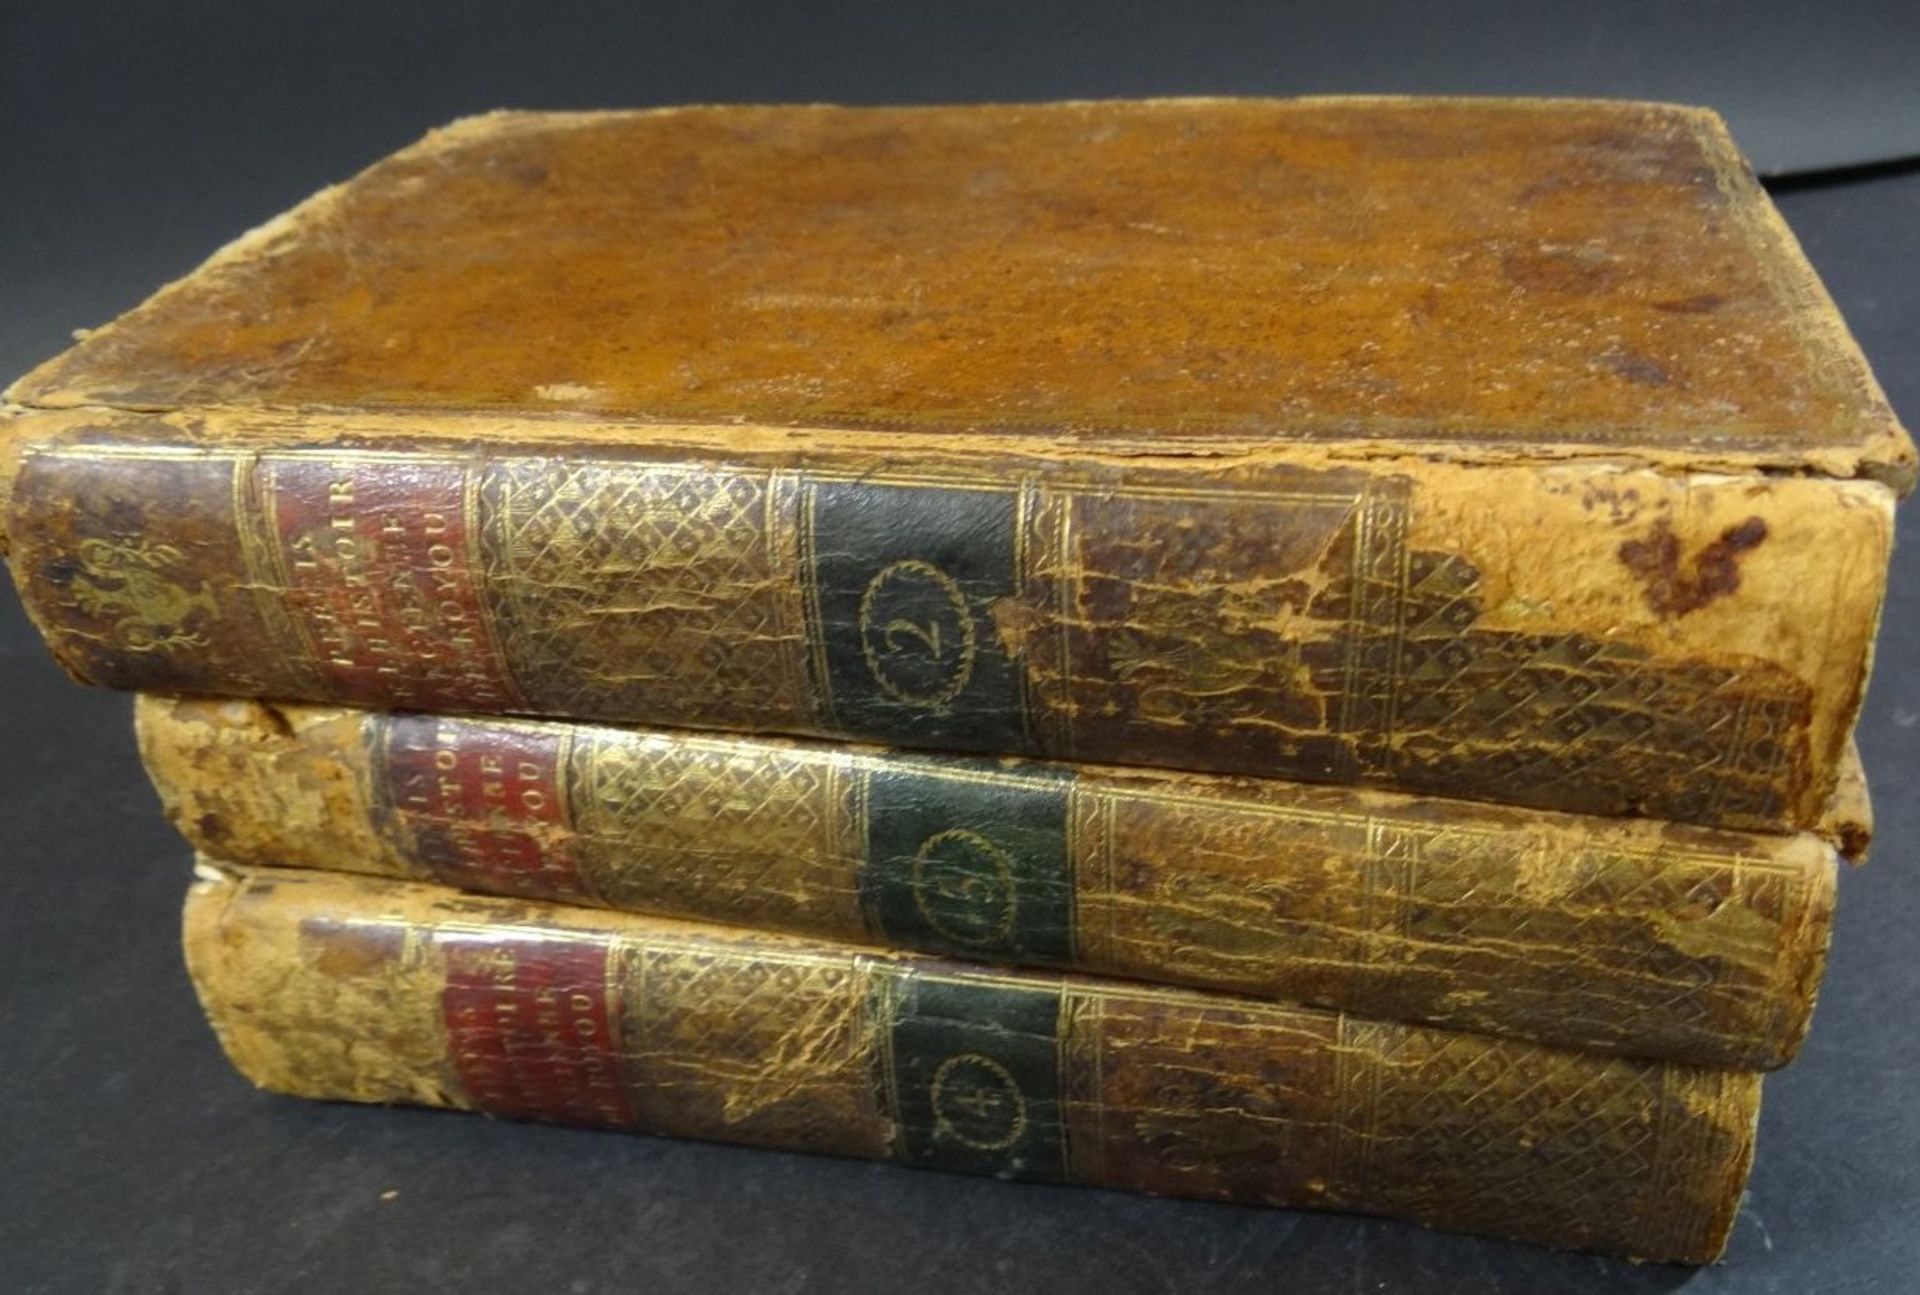 3 Bände "Prècis de L'Historire Ancienne" 1805, Ledereinbände, Gebrauchsspuren, Bd. 2-3-4, französis